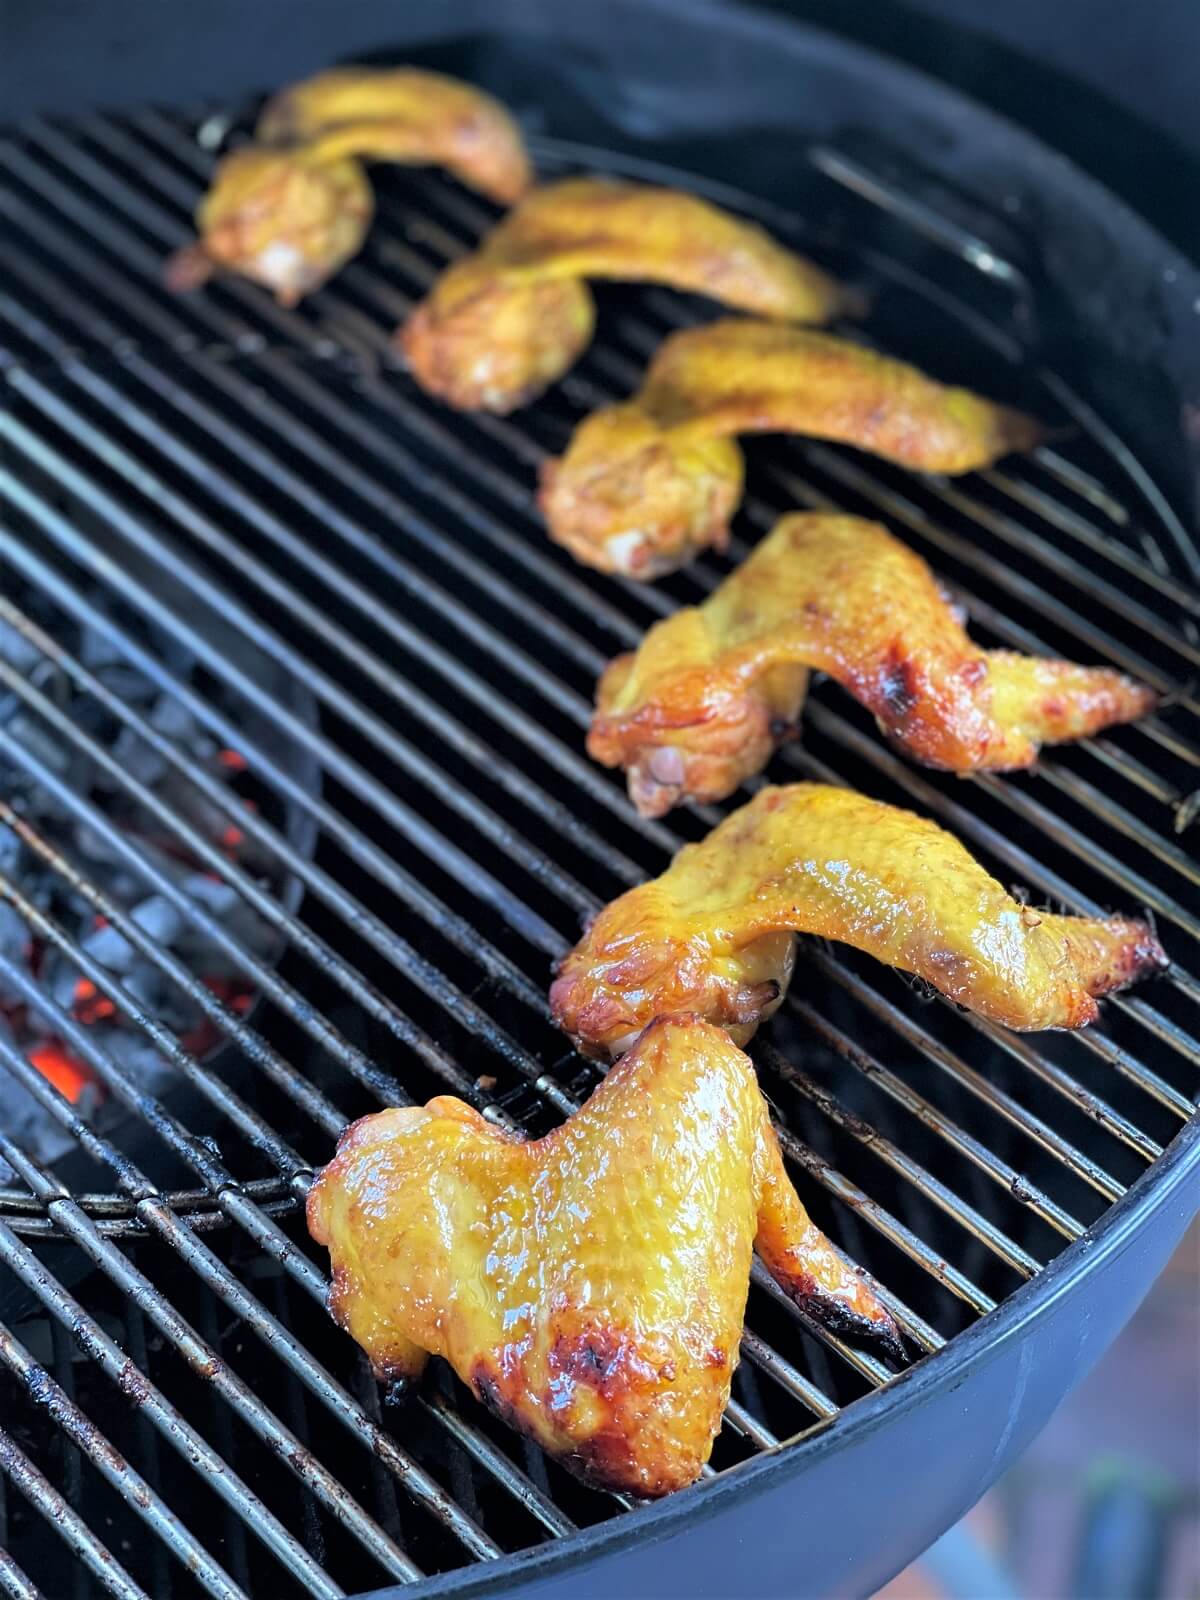 chicken wings in der indirekten hitze auf dem grillrost